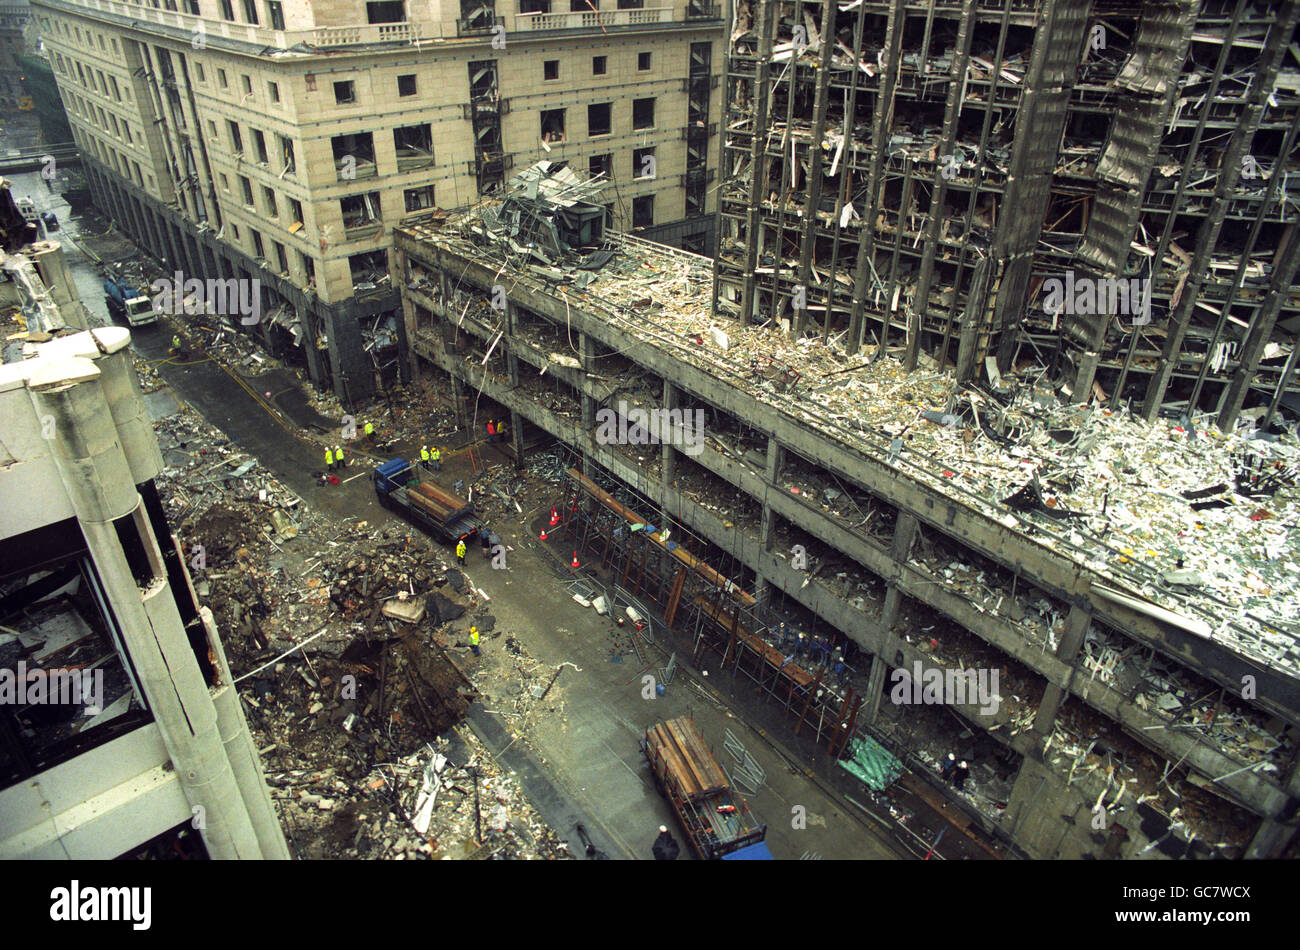 Die Verwüstung der Hong Kong und Shanghai Bank und der Krater links in Bishopsgate [links, Vordergrund] in London nach dem massiven Bombenanschlag der IRA. Stockfoto